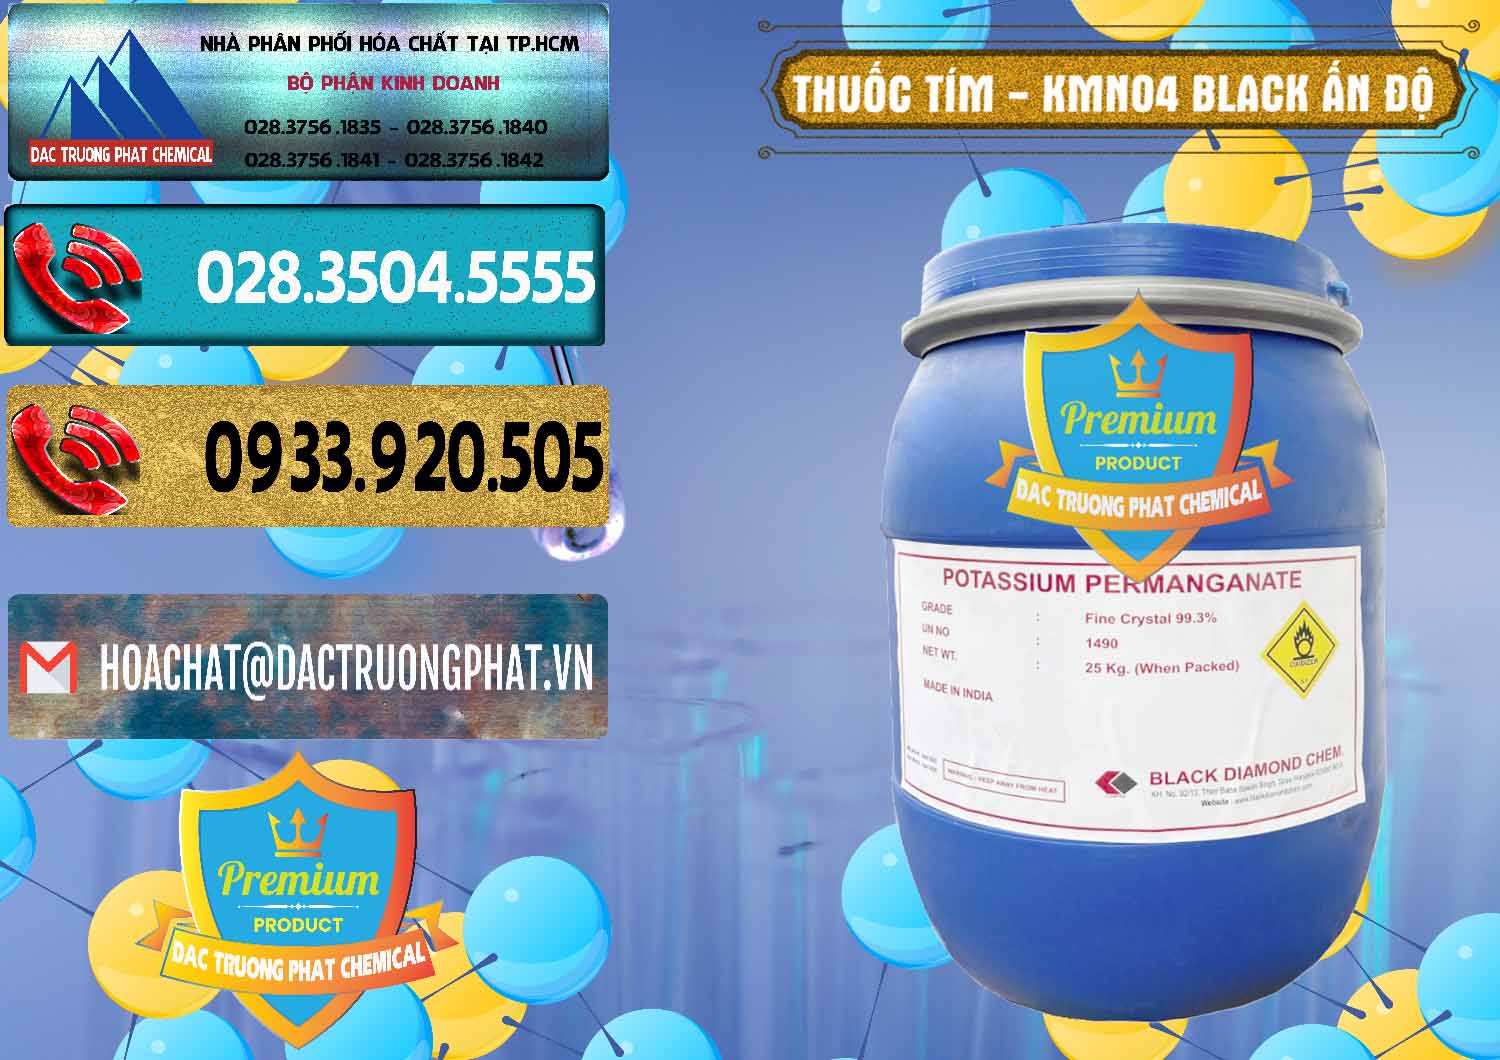 Nơi cung cấp ( bán ) Thuốc Tím - KMNO4 Black Diamond Ấn Độ India - 0414 - Nơi chuyên phân phối - kinh doanh hóa chất tại TP.HCM - hoachatdetnhuom.com